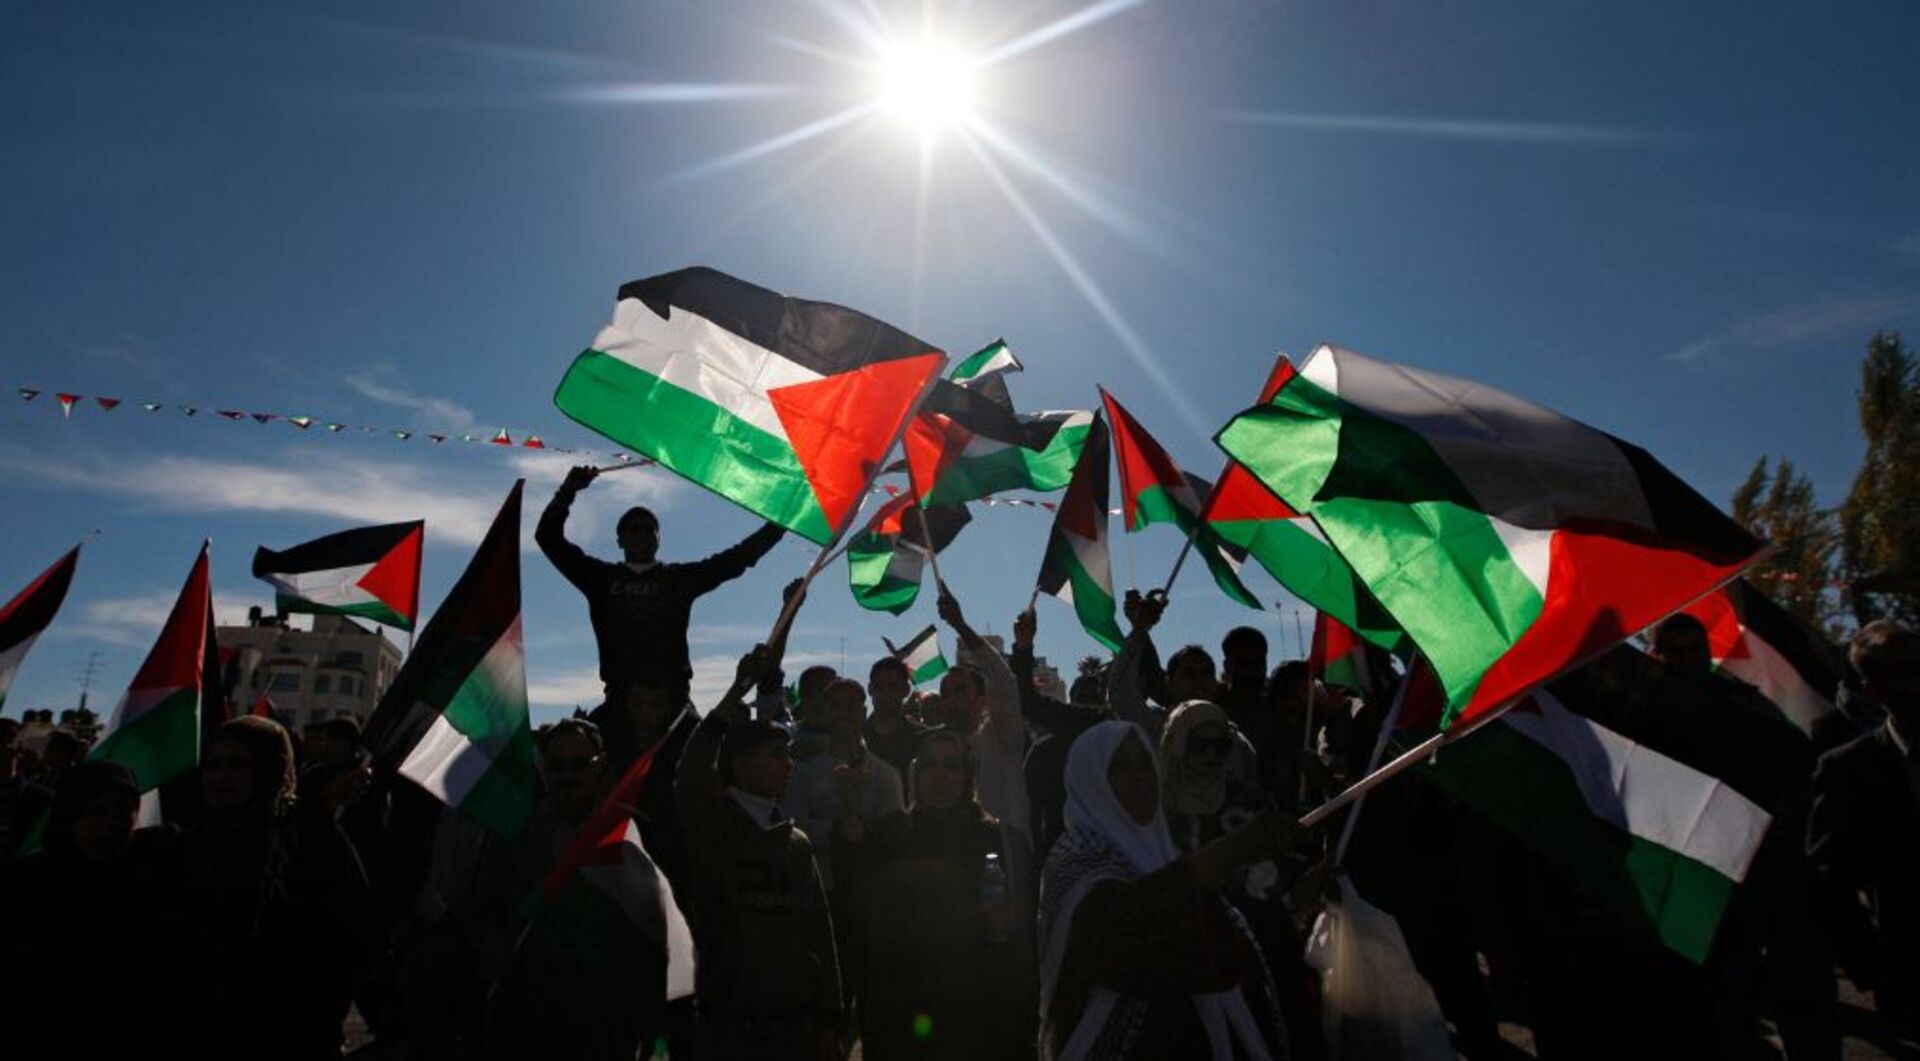 ماذا يعني الاعتراف المتزايد بالدولة الفلسطينية؟  |  الصراع الإسرائيلي الفلسطيني